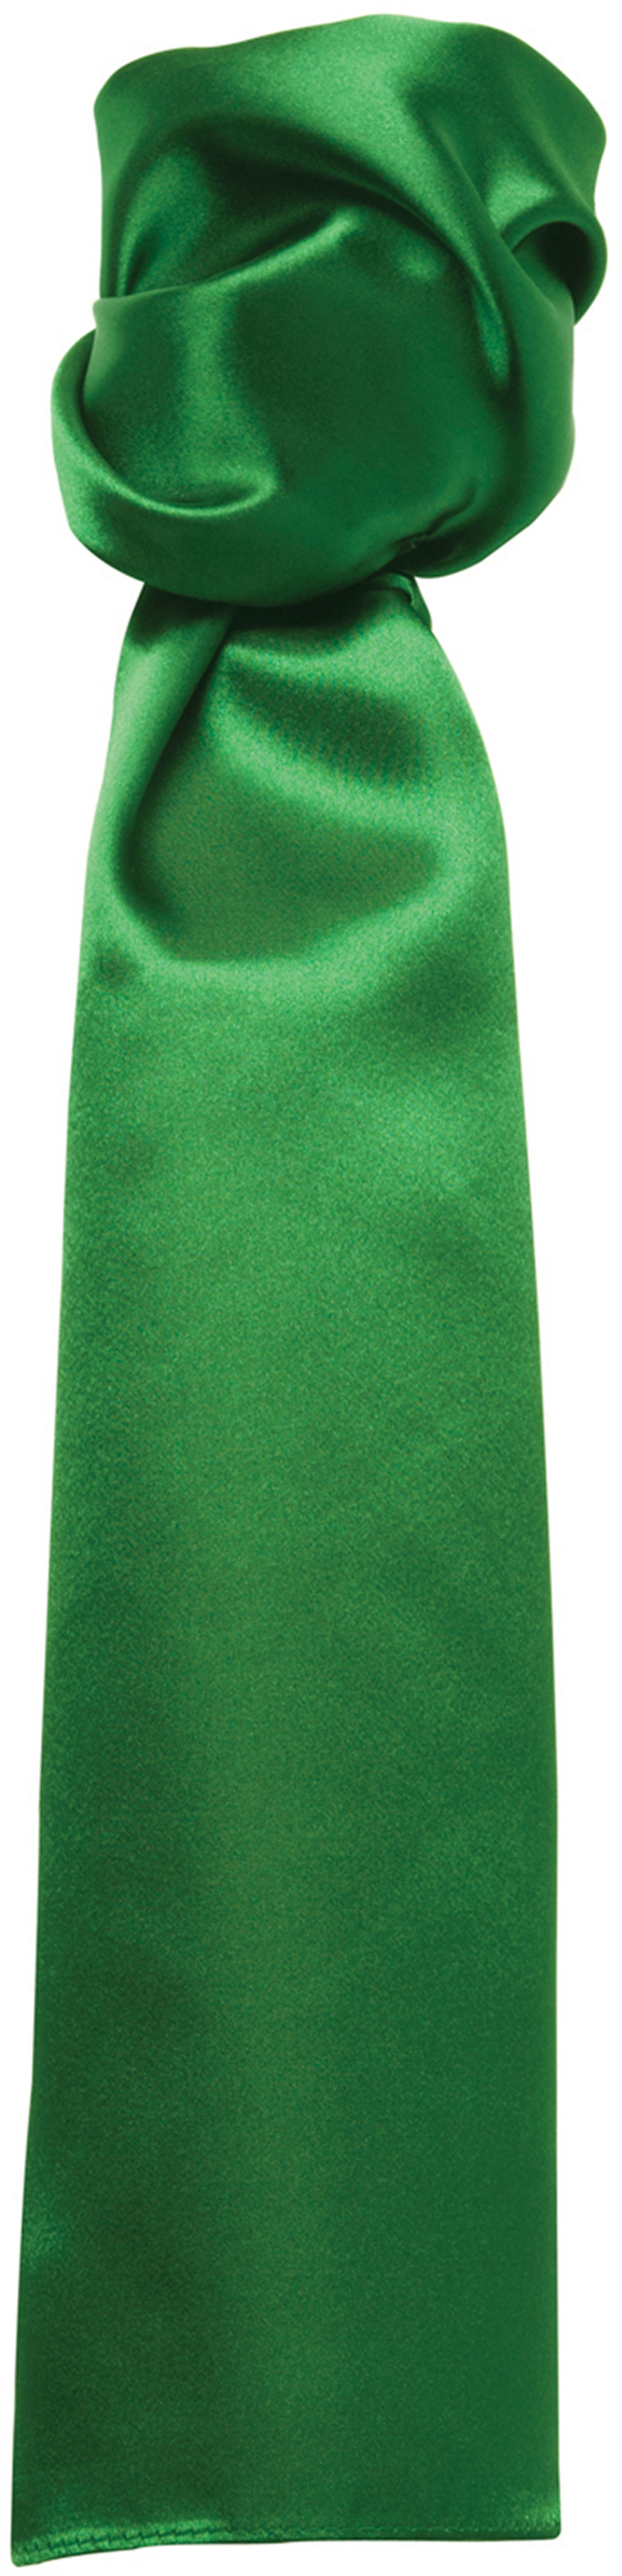 Foulard uni Emerald Vert